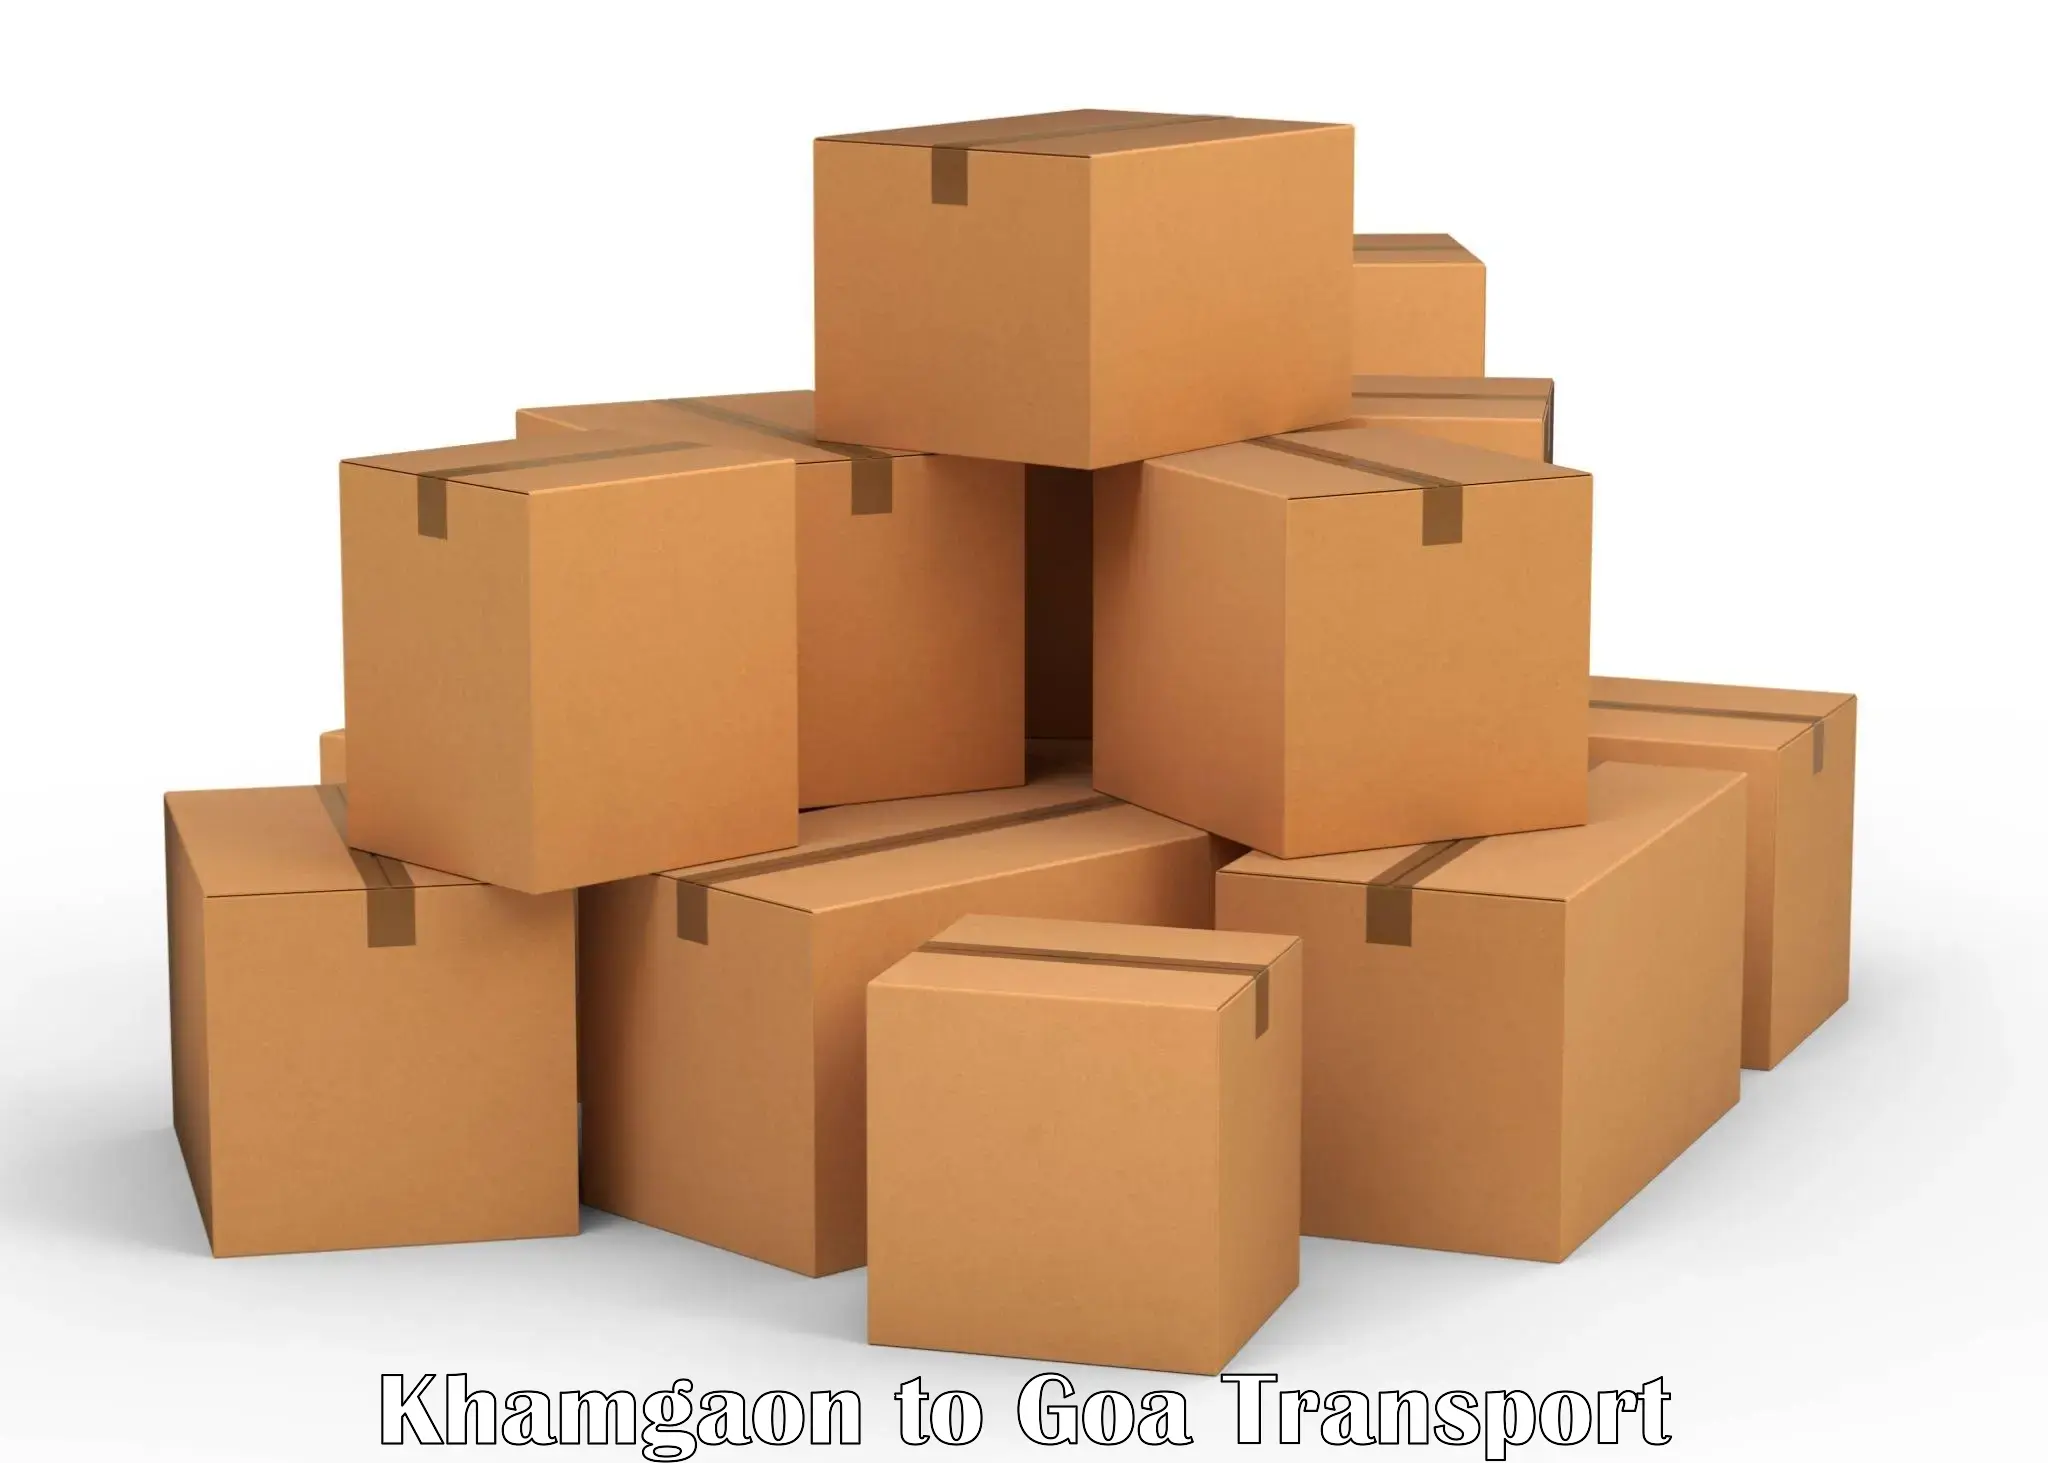 Cargo transportation services Khamgaon to Margao